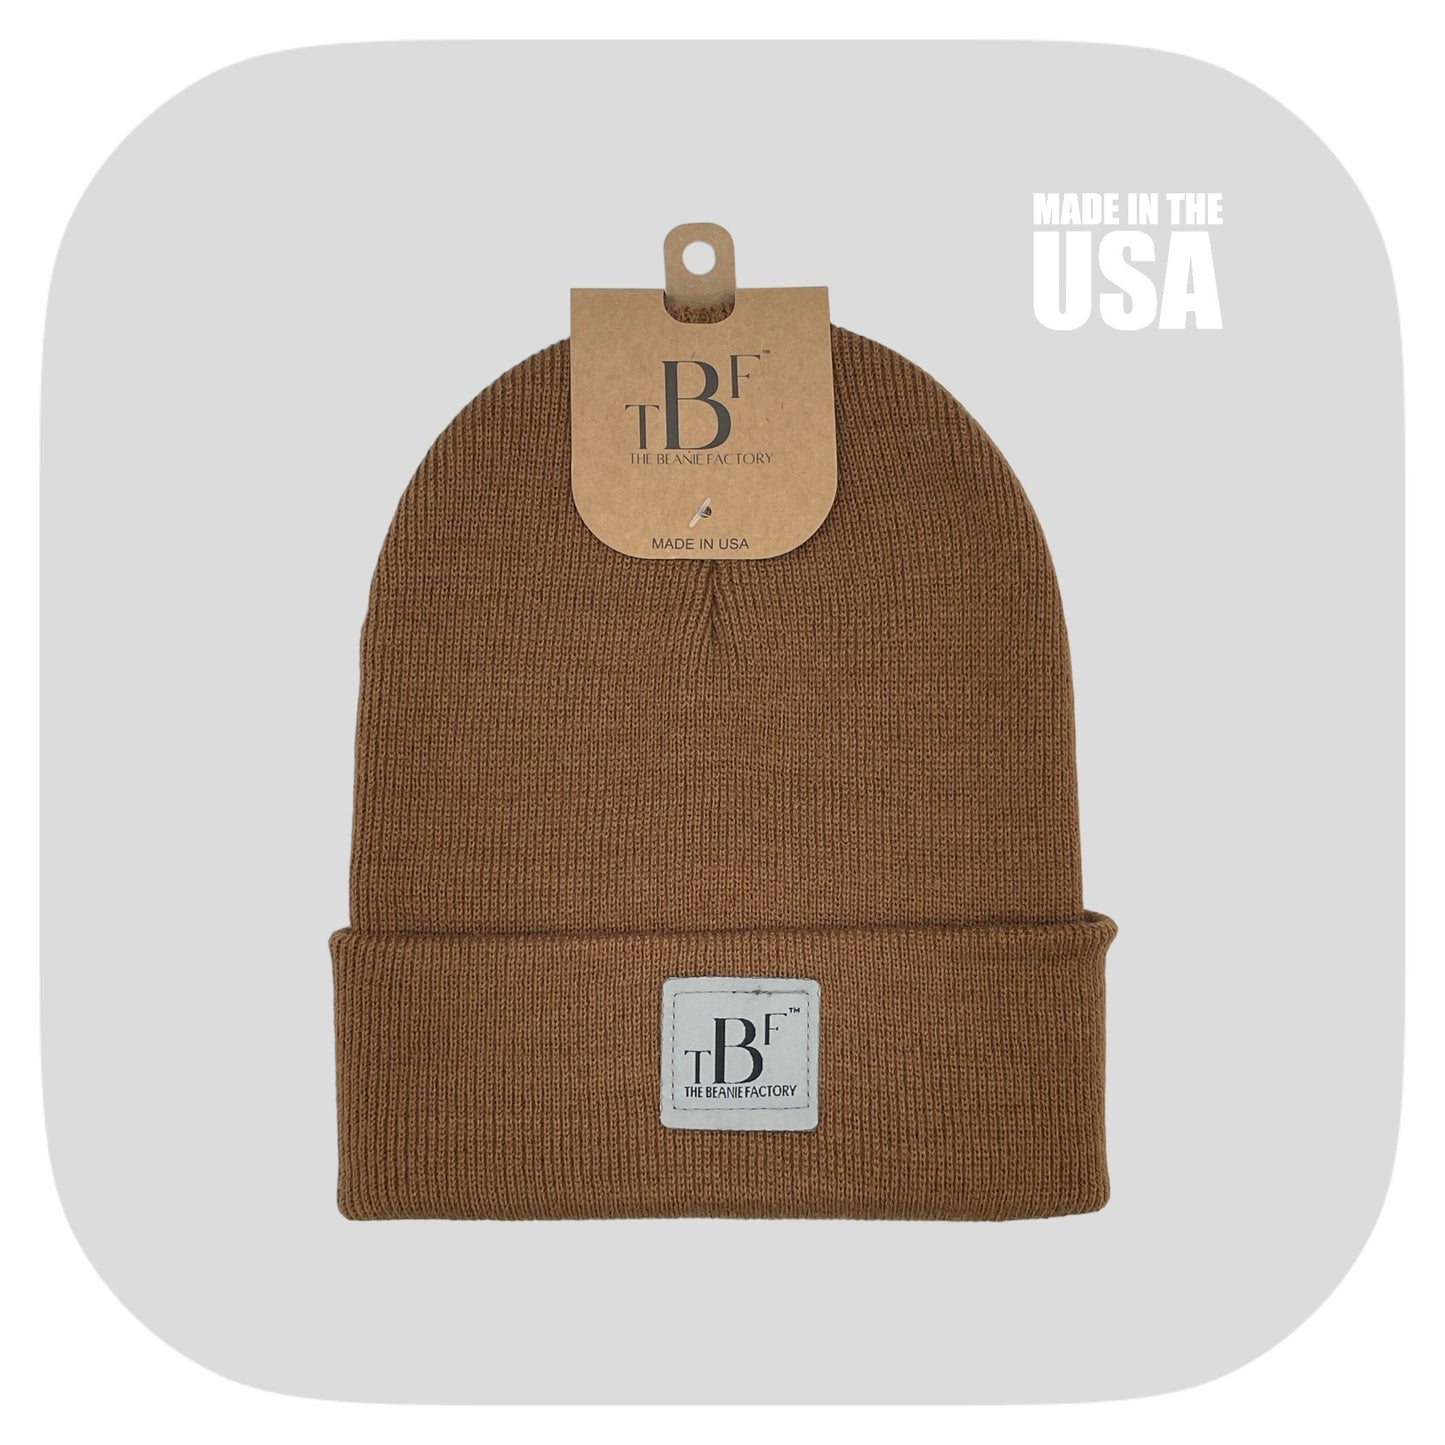 The Beanie Factory Cuffed Winter Hat, Made in U.S., Gray Beanie - The Beanie Factory